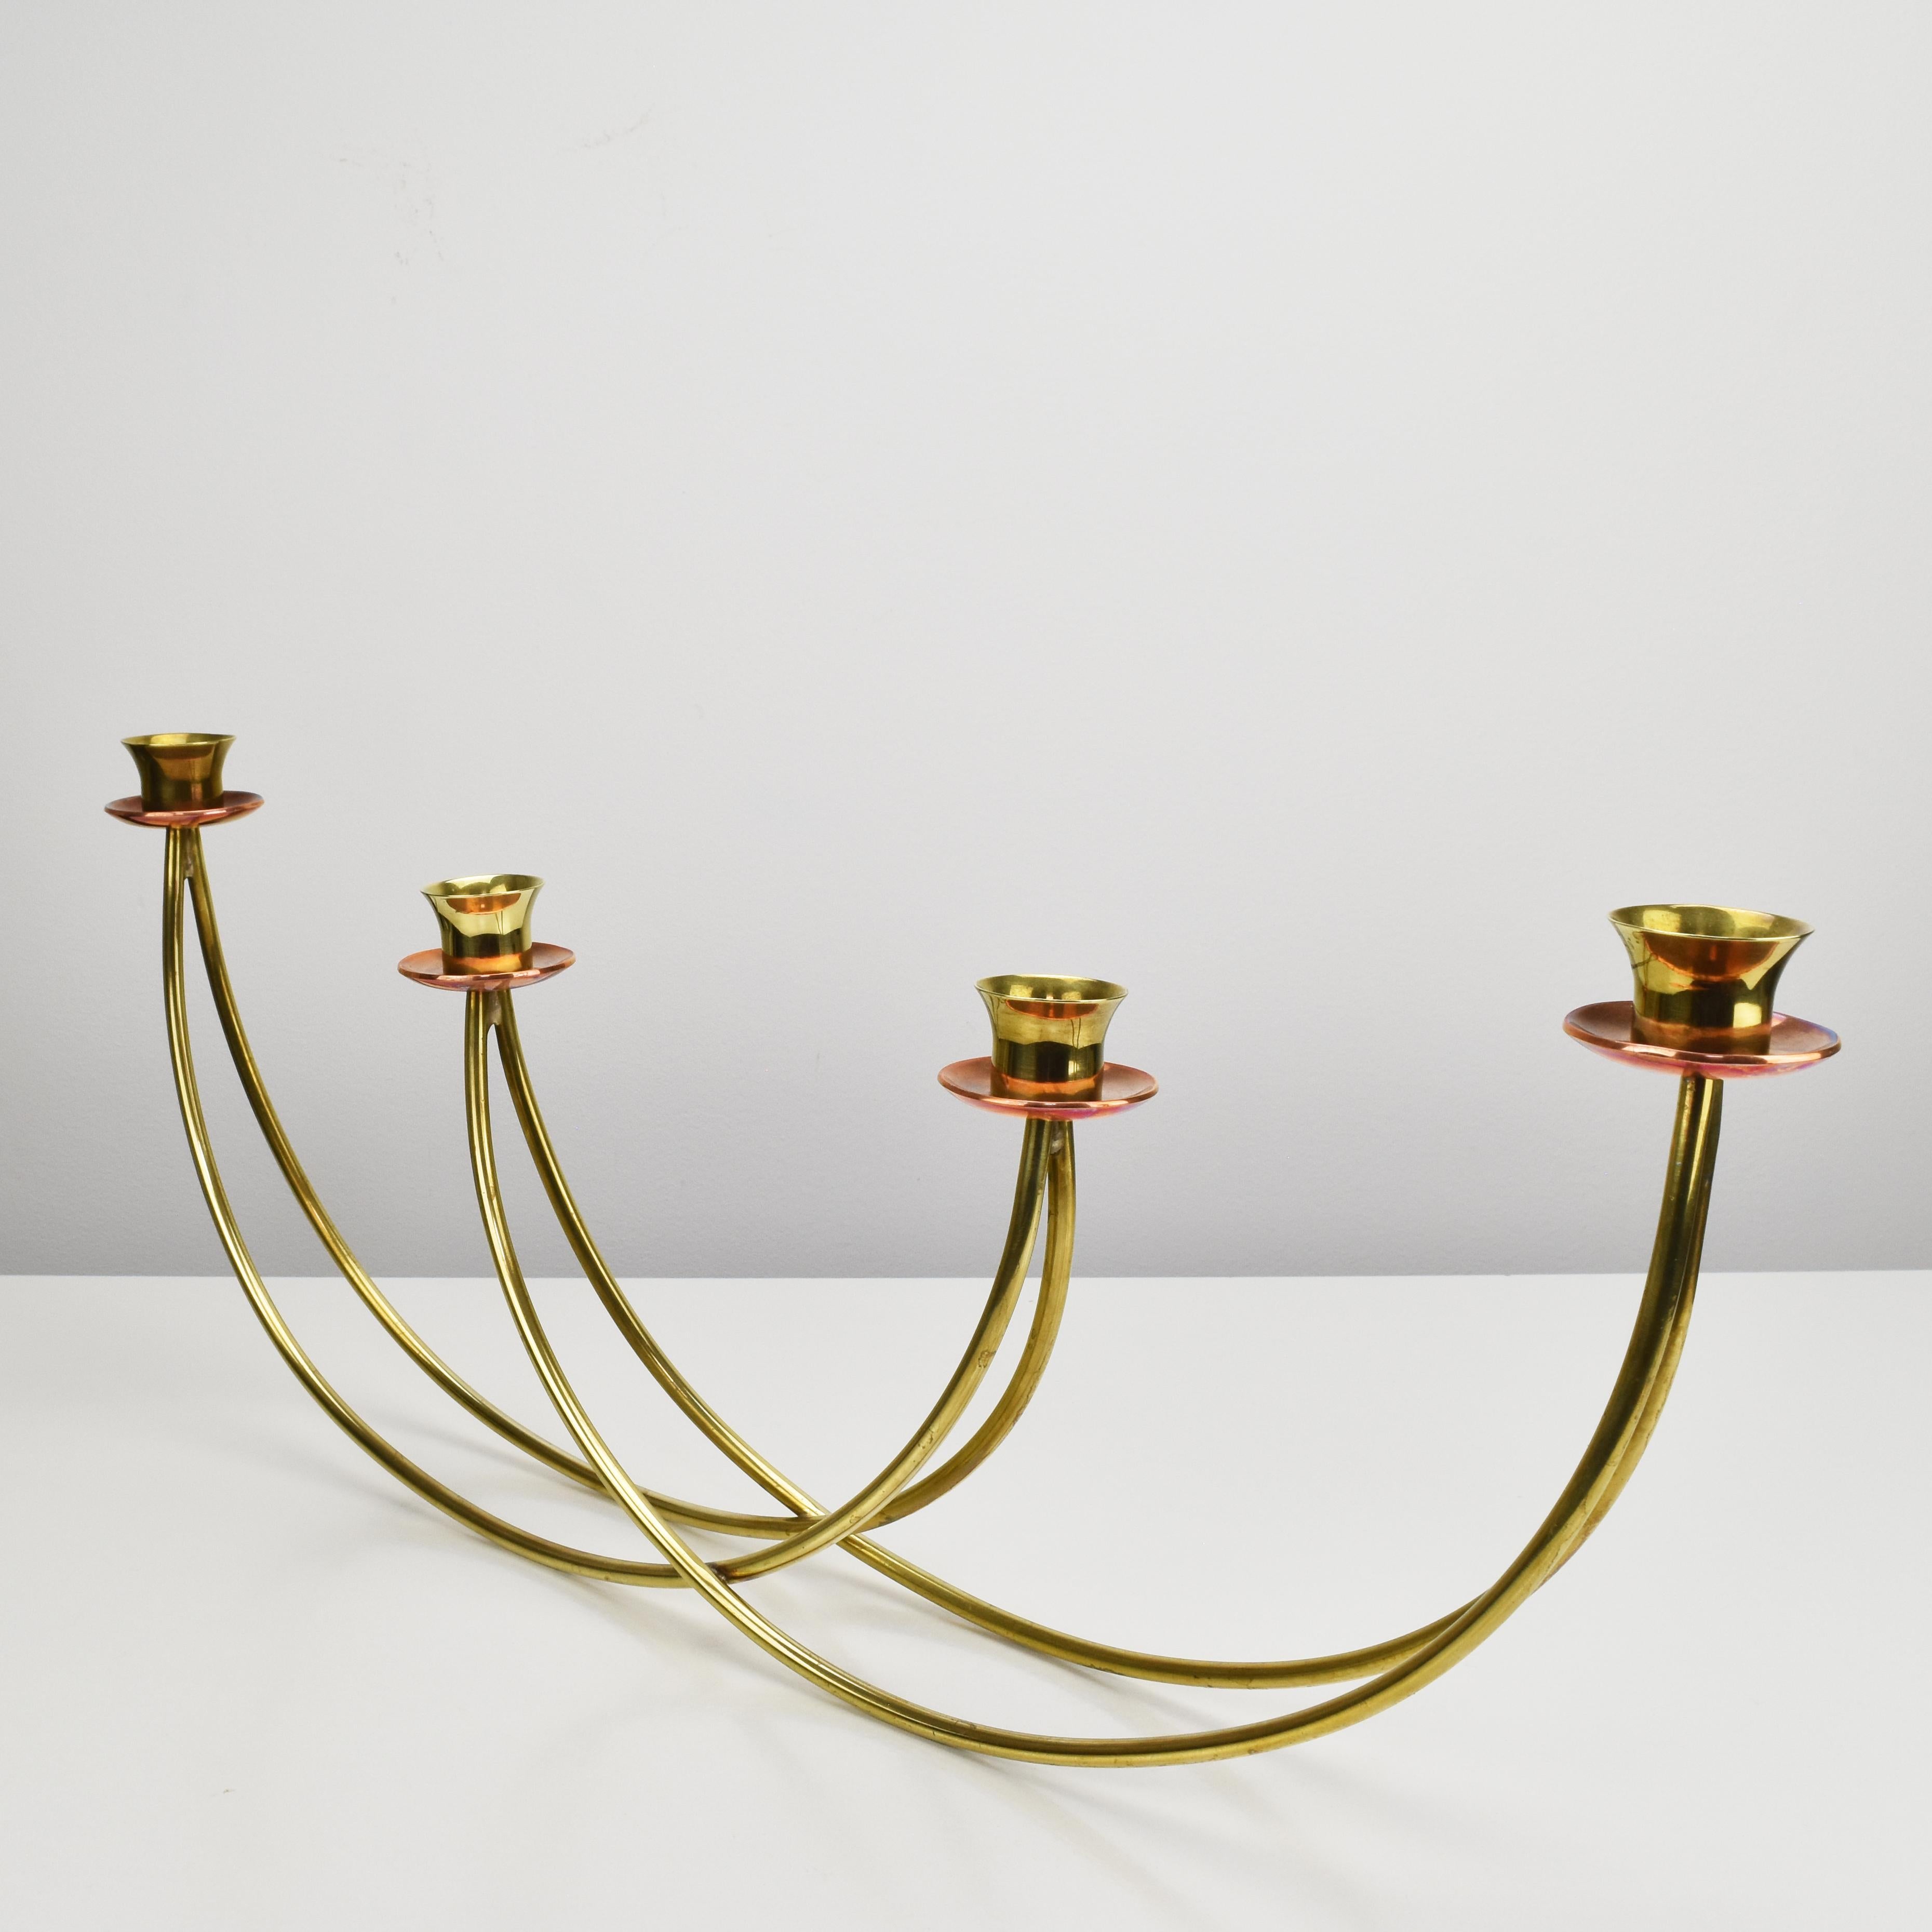 Minimalistisch gestalteter Kerzenständer für vier Kerzen aus massivem Messing mit kupfernen Tropfschalen, der Harald Buchrucker aus den 1940er Jahren zugeschrieben wird.